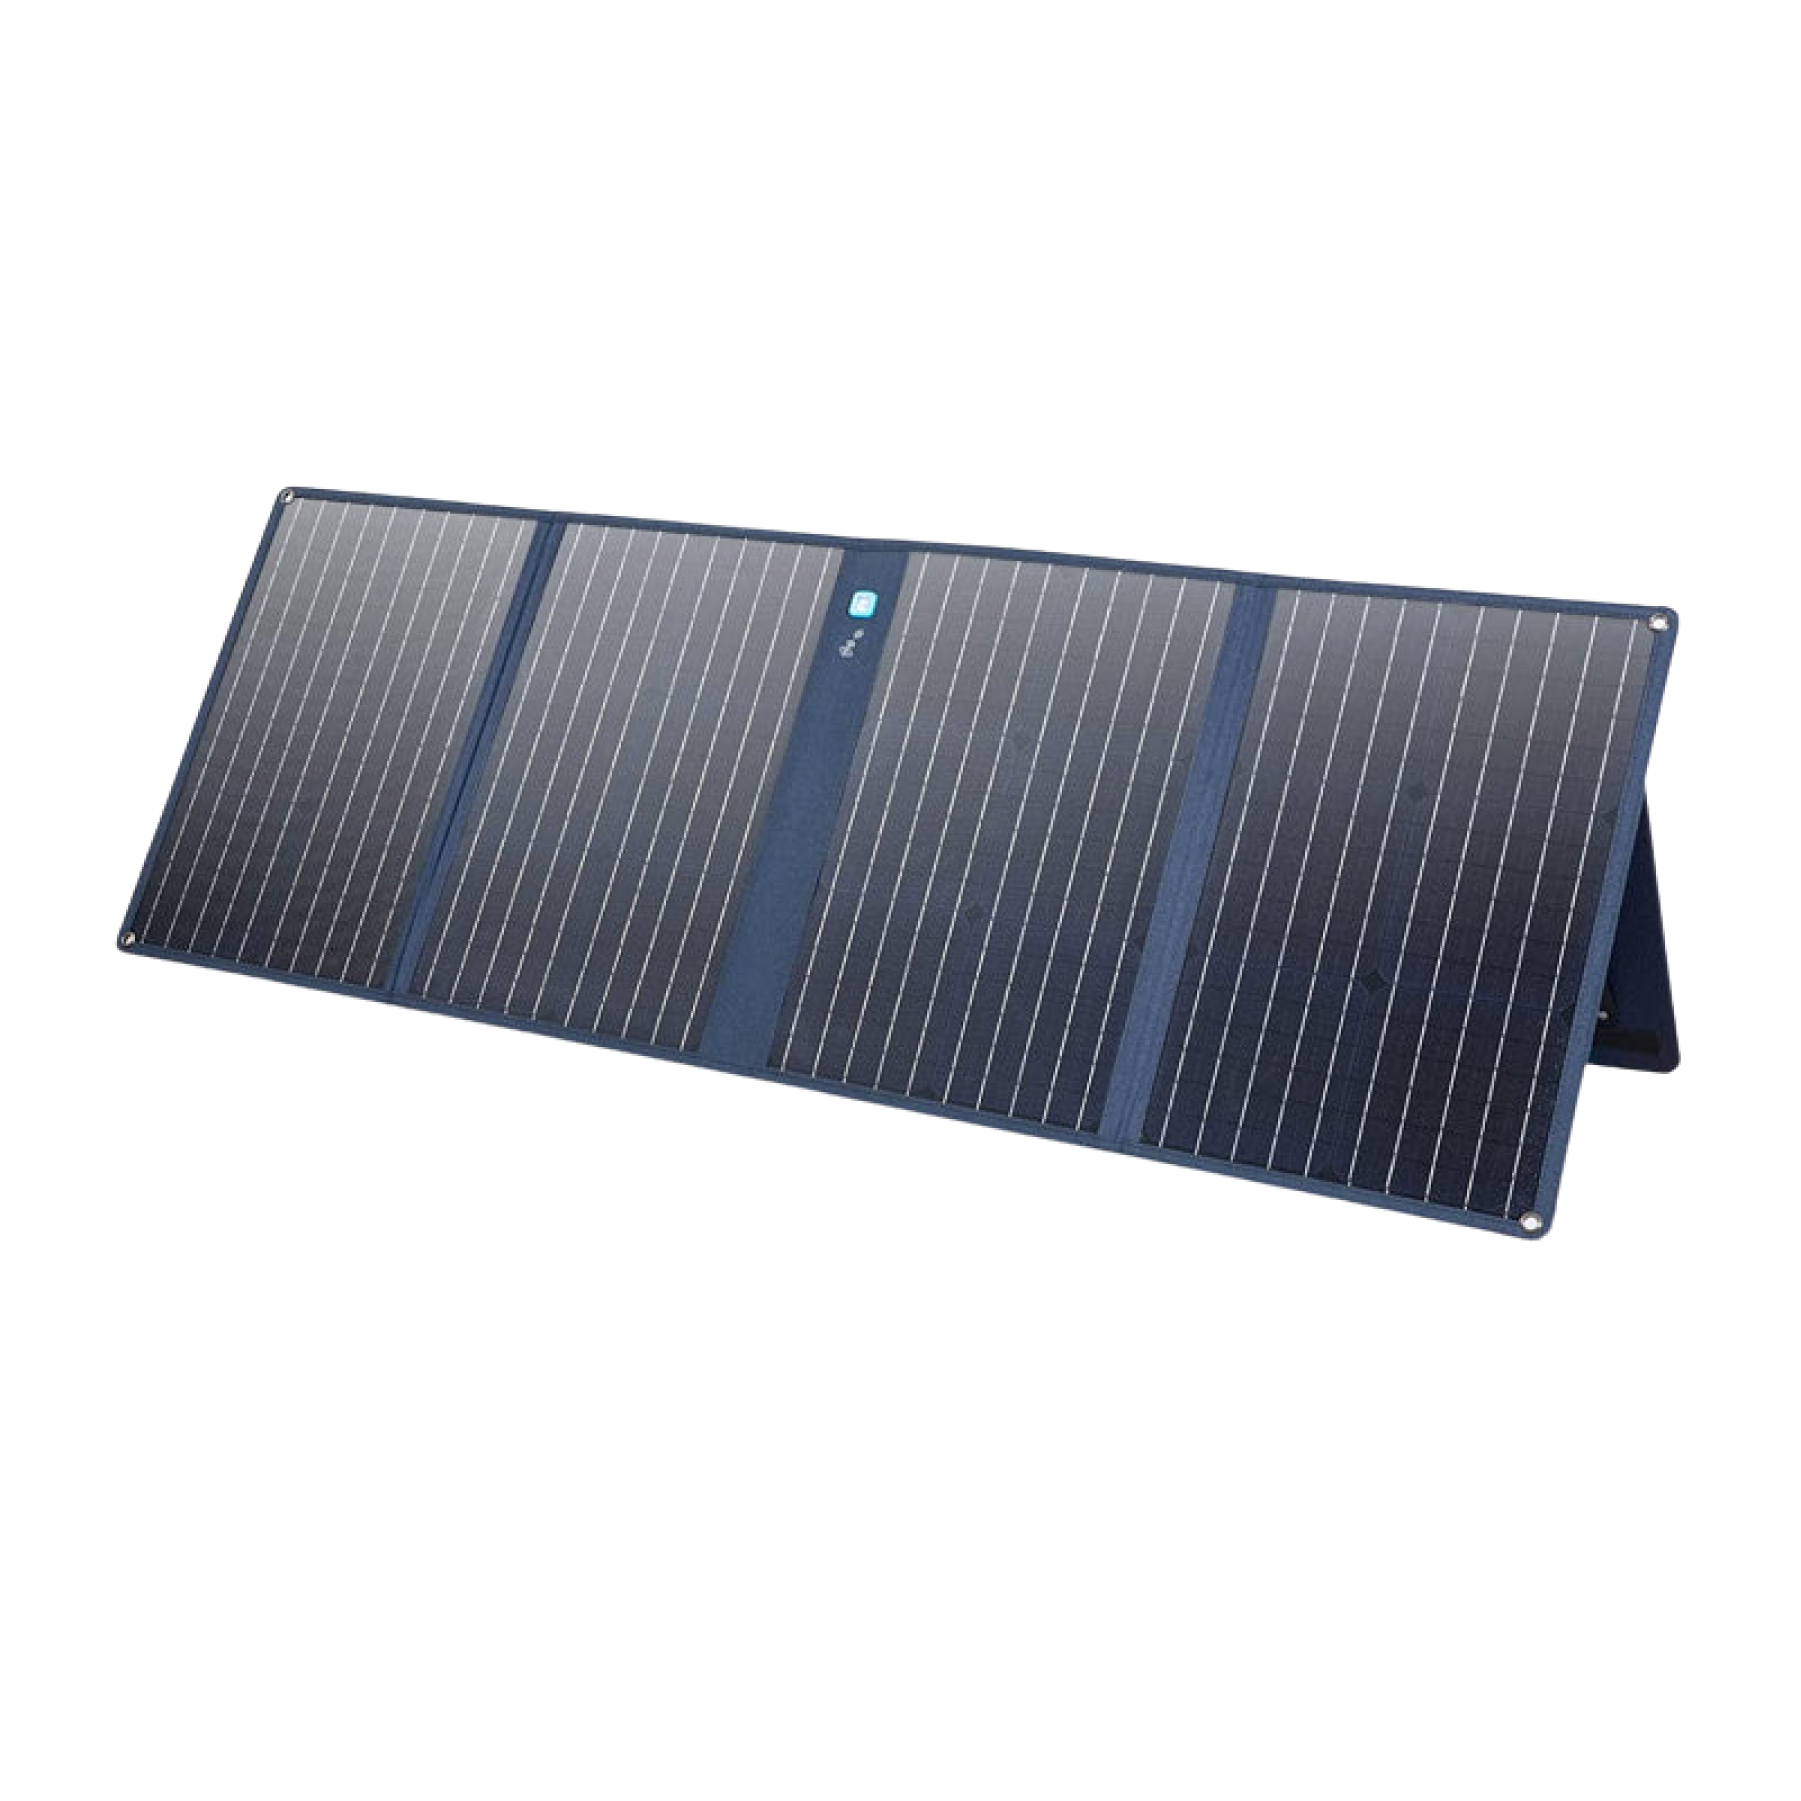 Midsouth Solar Pros Solar Installer